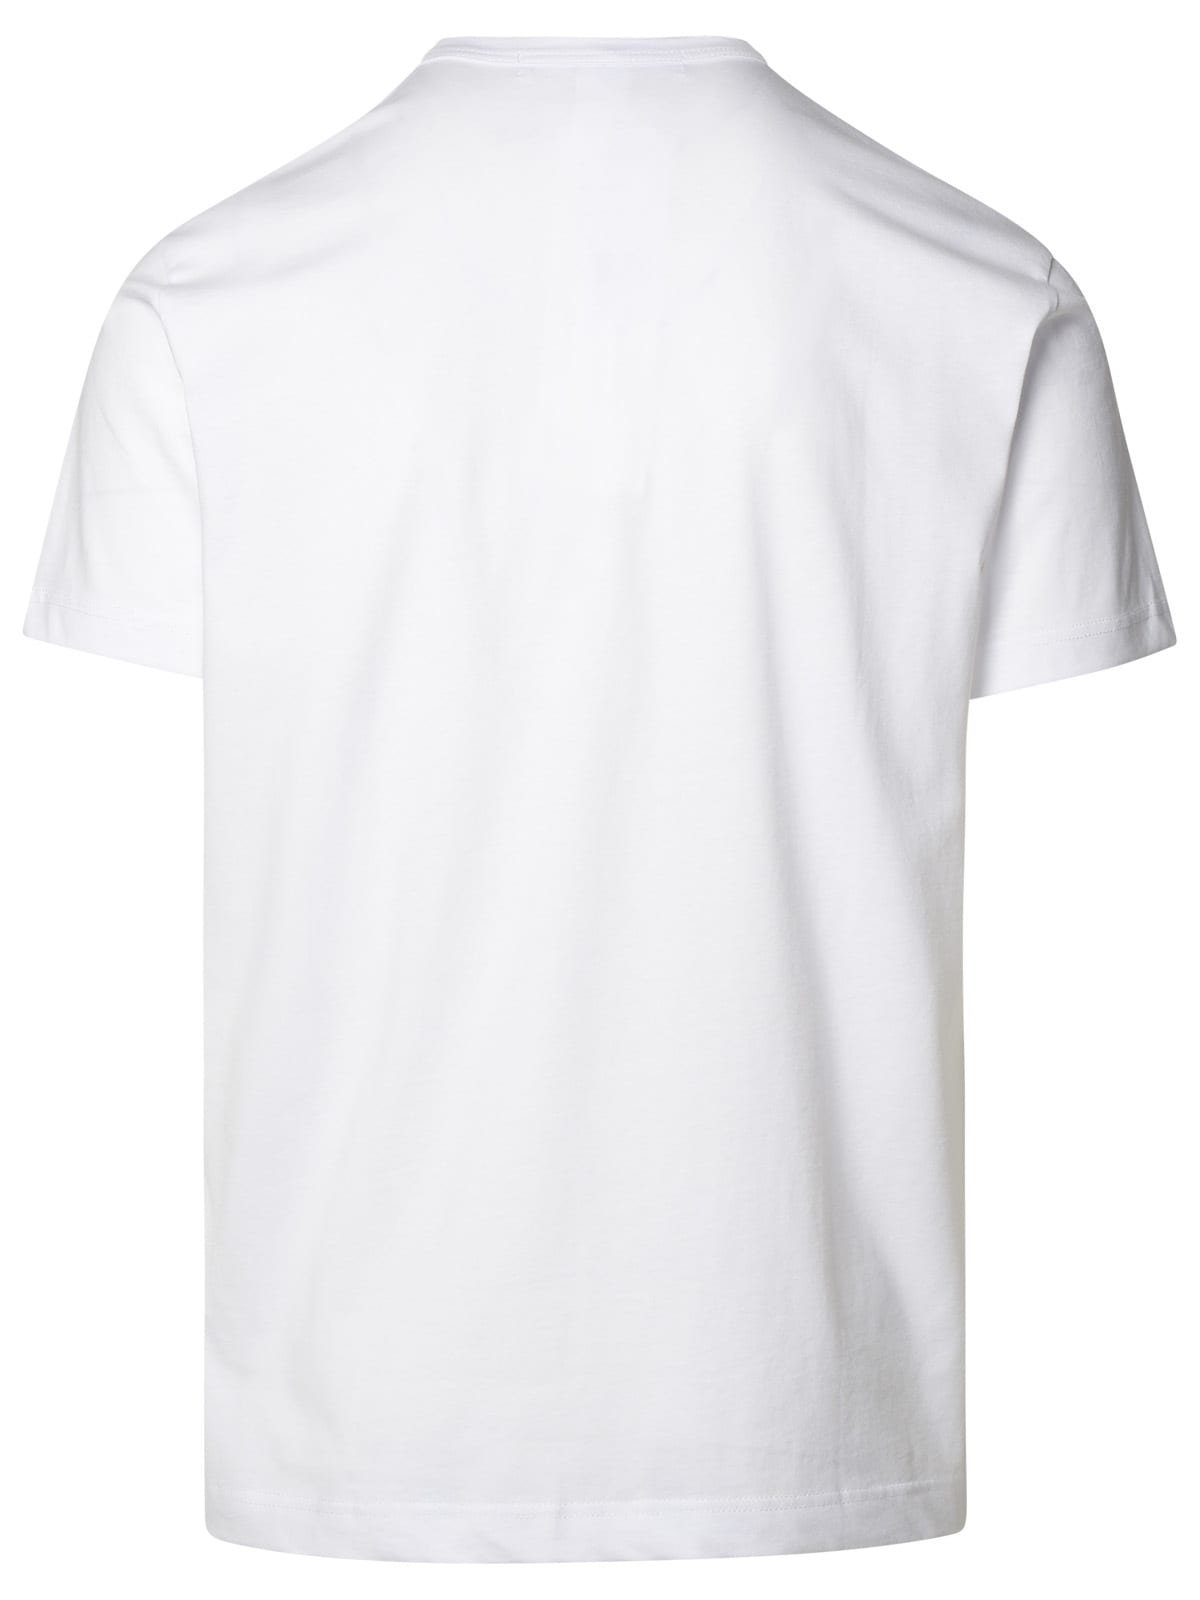 Shop Comme Des Garçons Shirt Marilyn Monroe White Cotton T-shirt